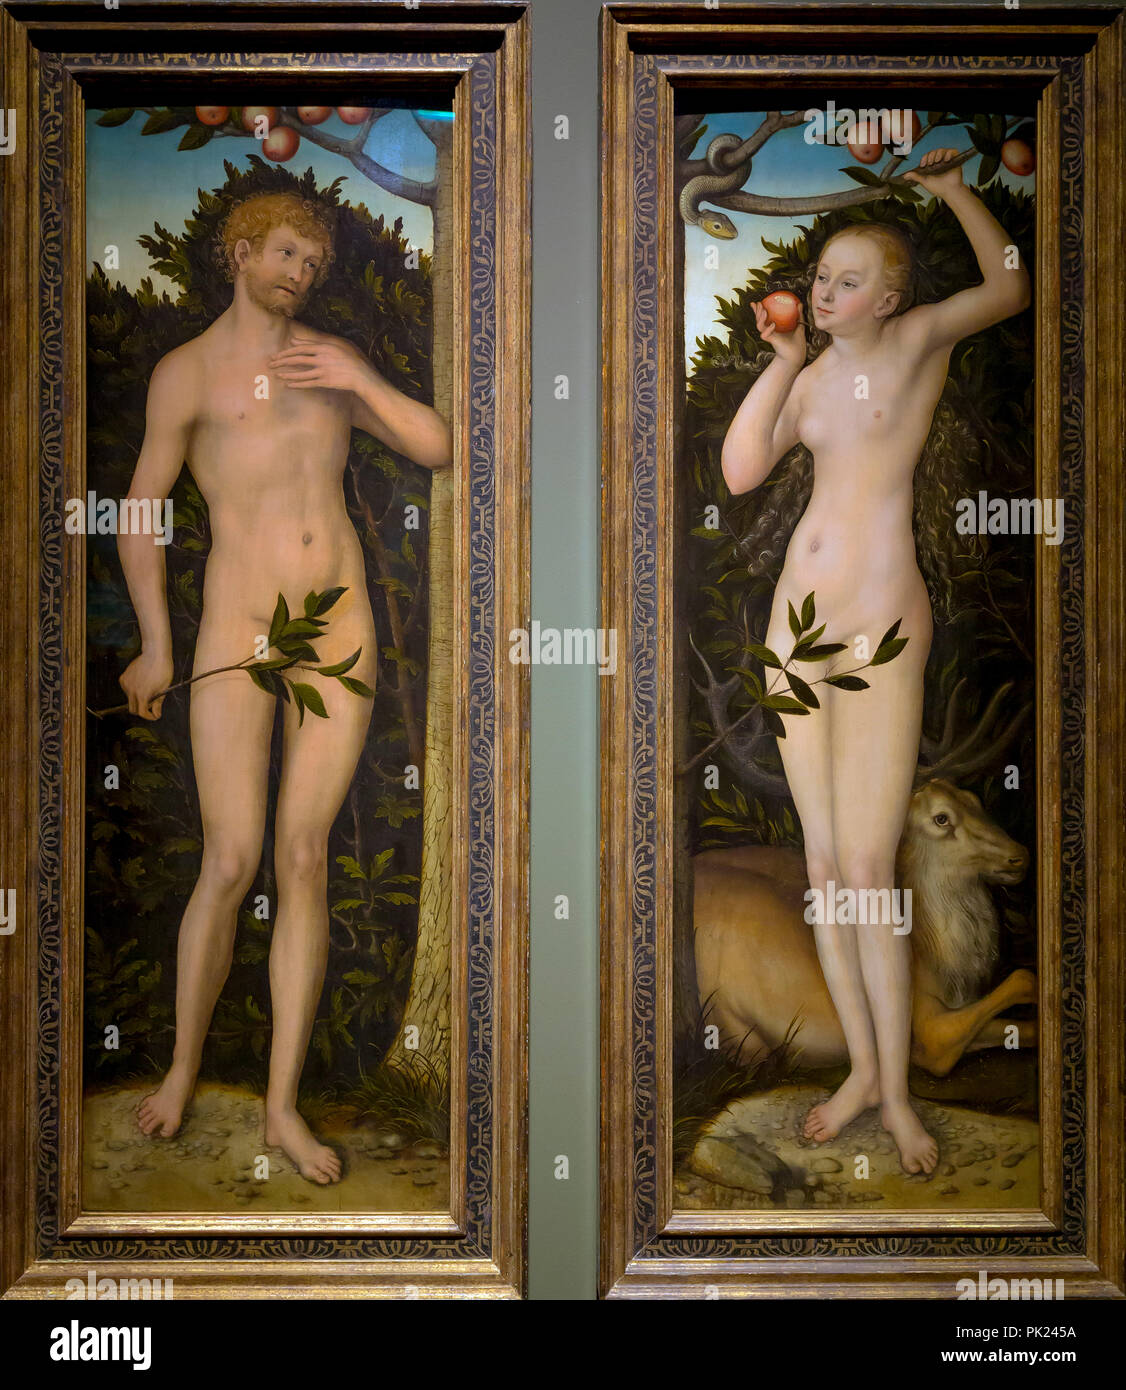 Adam and Eve, Lucas Cranach the Elder, 1533, 1537, Art Institute of Chicago, Chicago, Illinois, USA, North America, Stock Photo